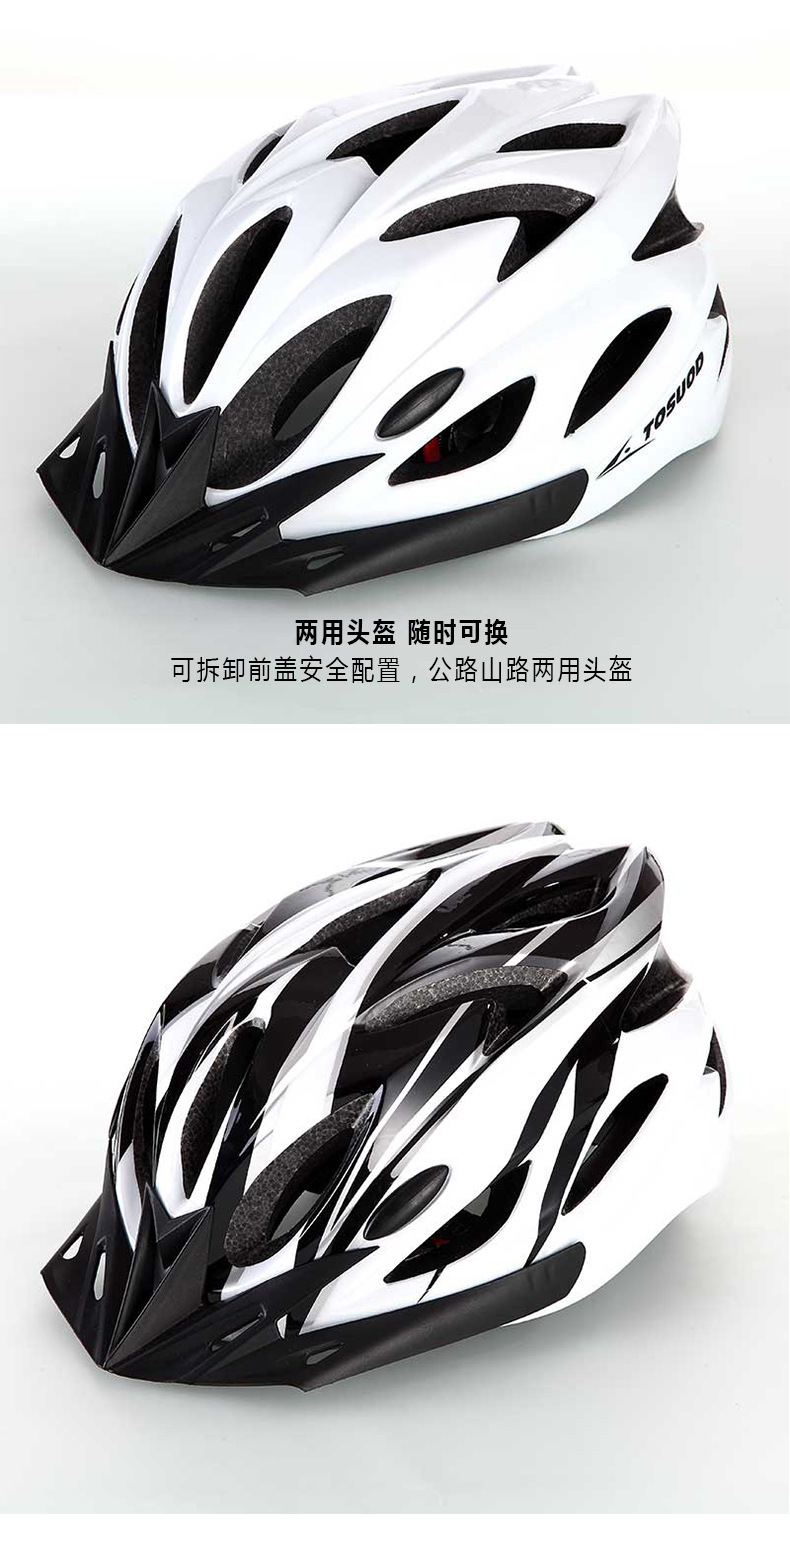 厂家直销BICYCLEV一体成型头盔 自行车头盔 骑行头盔 山地车头盔示例图6